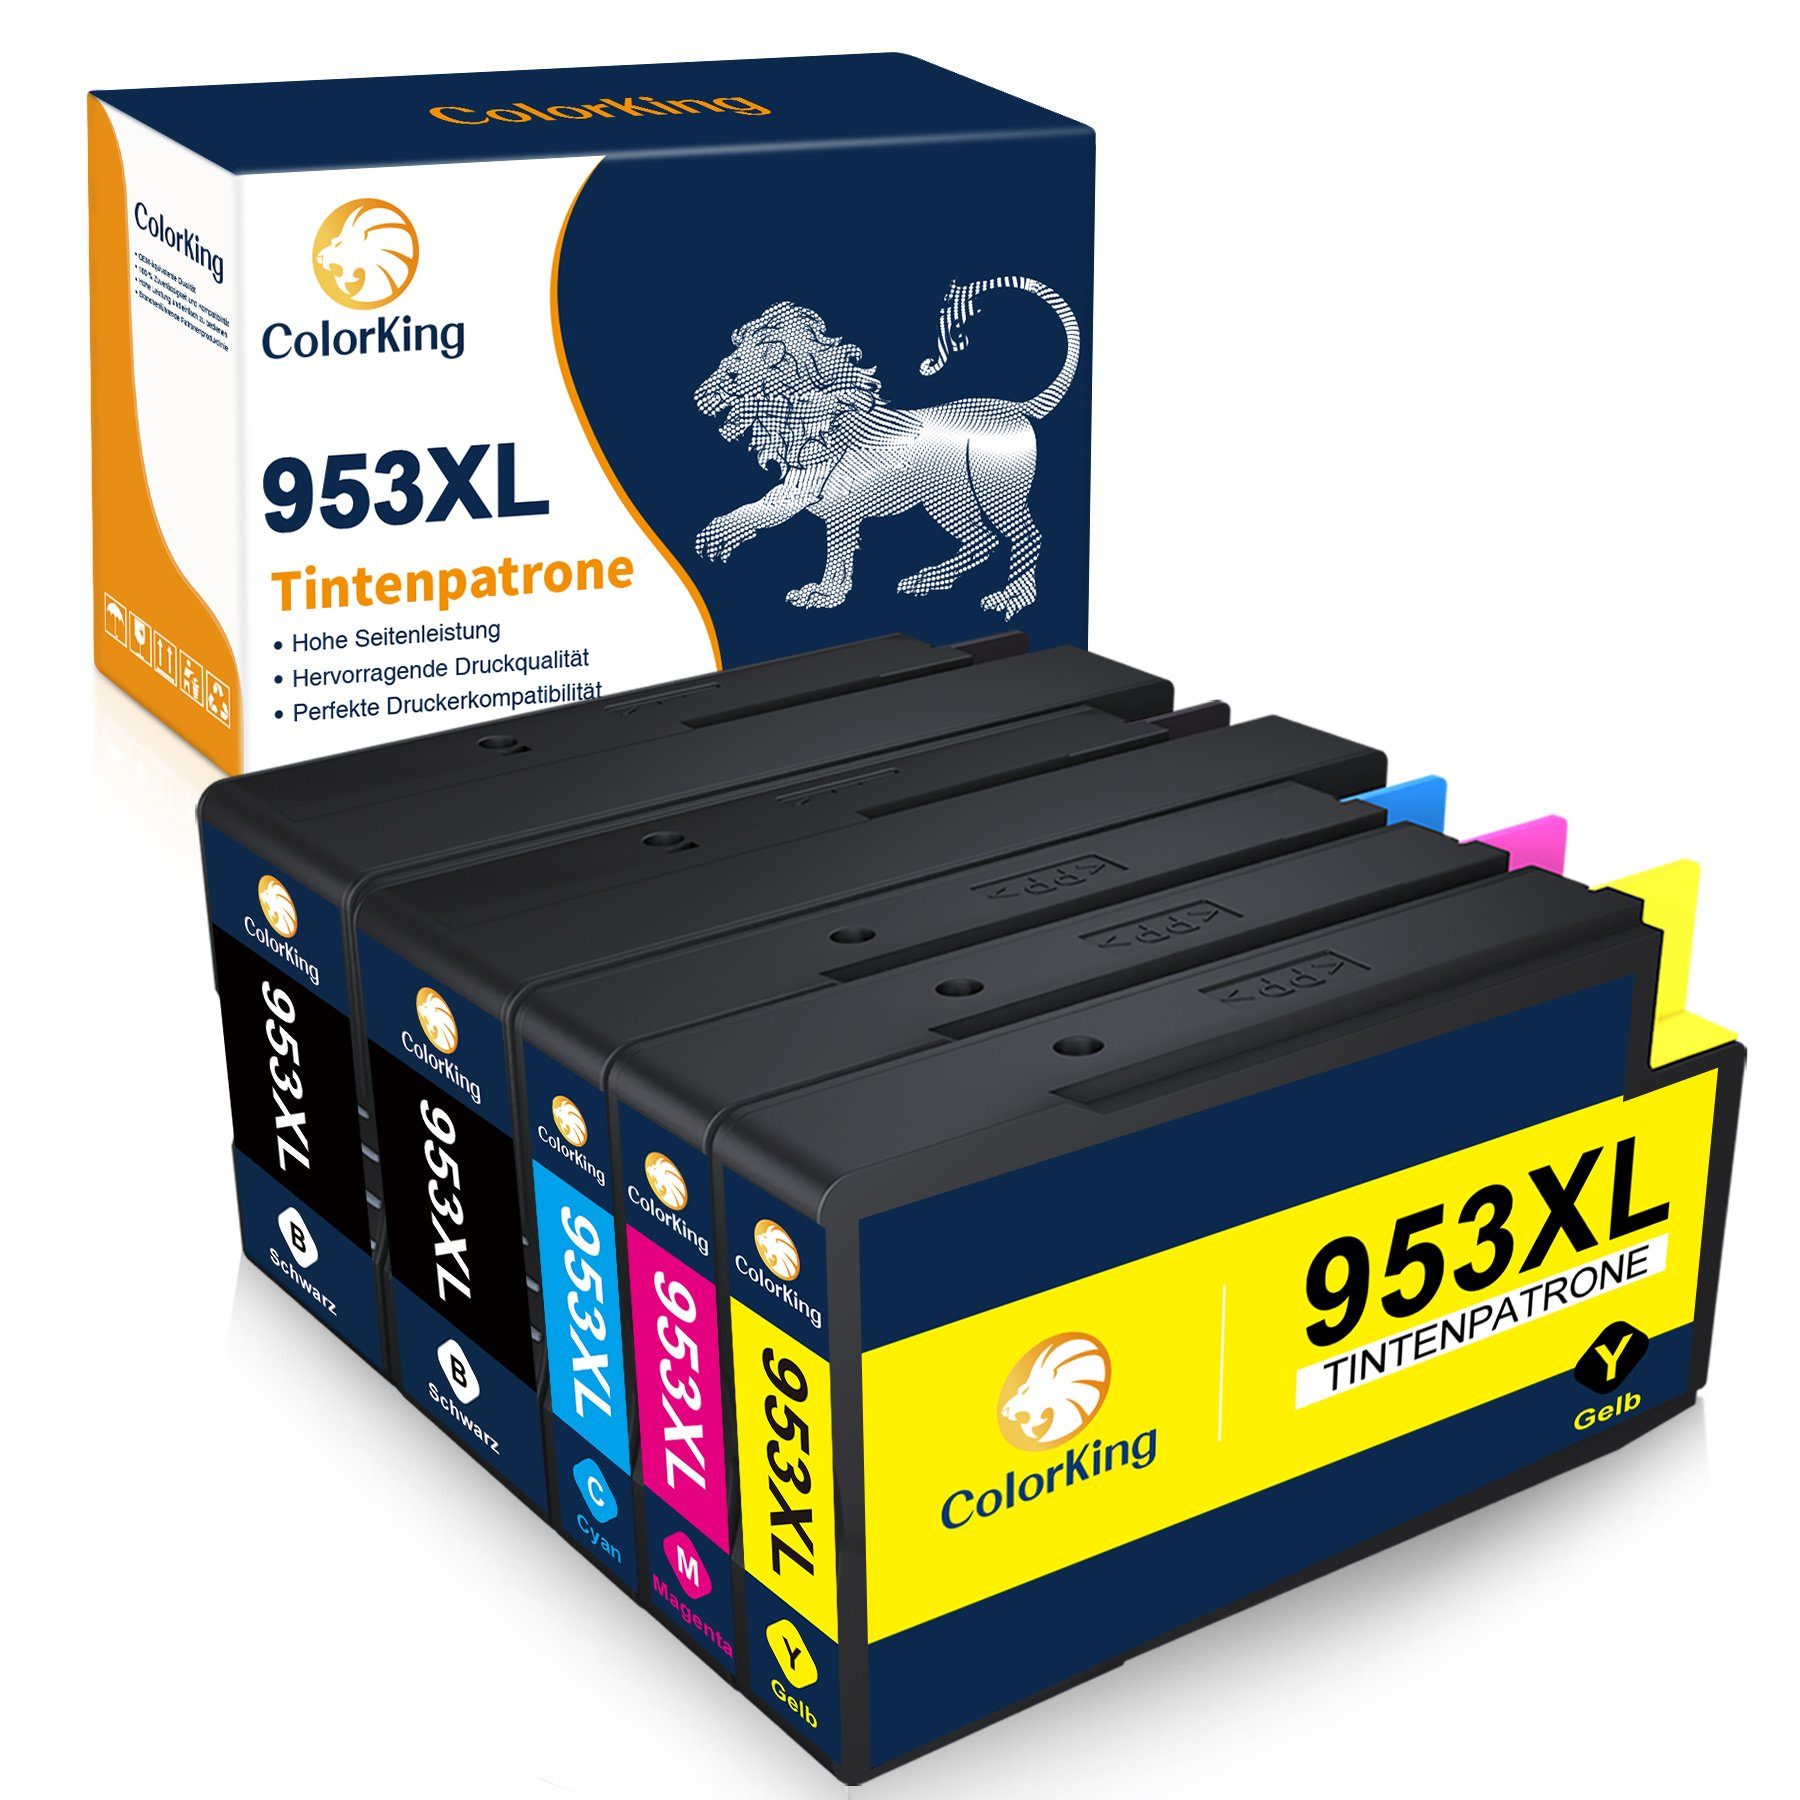 5er-pack=2x Multipack 1x Magenta, für XL 1x Cyan, Ersatz HP Tintenpatrone ColorKing Gelb HP953 953 Schwarz, HP953XL 1x 953XL